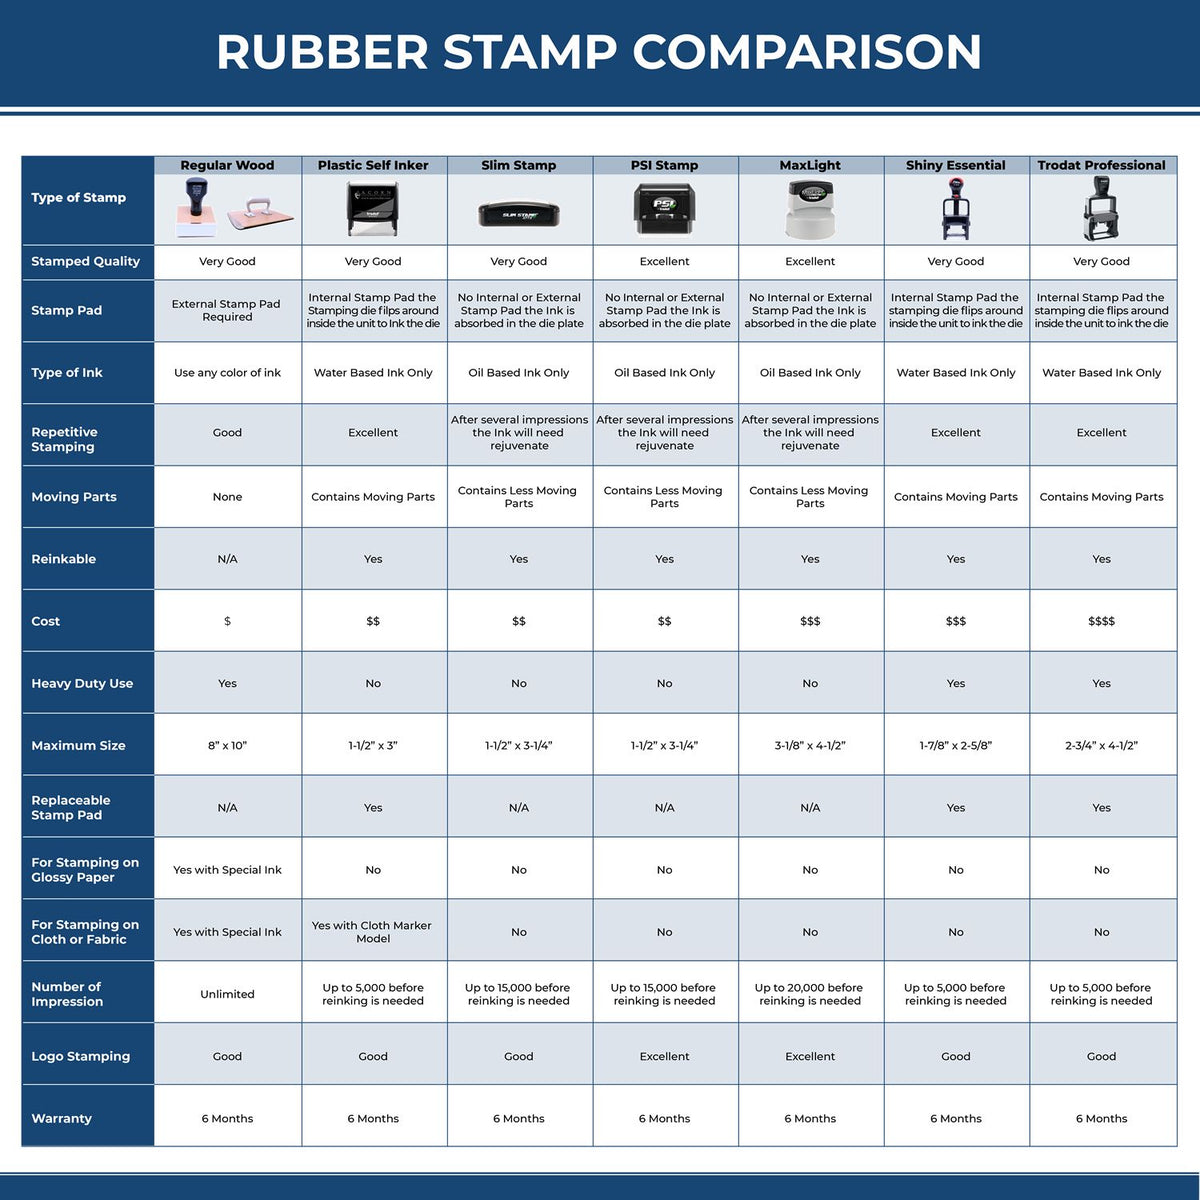 Blue Copy Xstamper Stamp 5009 Rubber Stamp Comparison